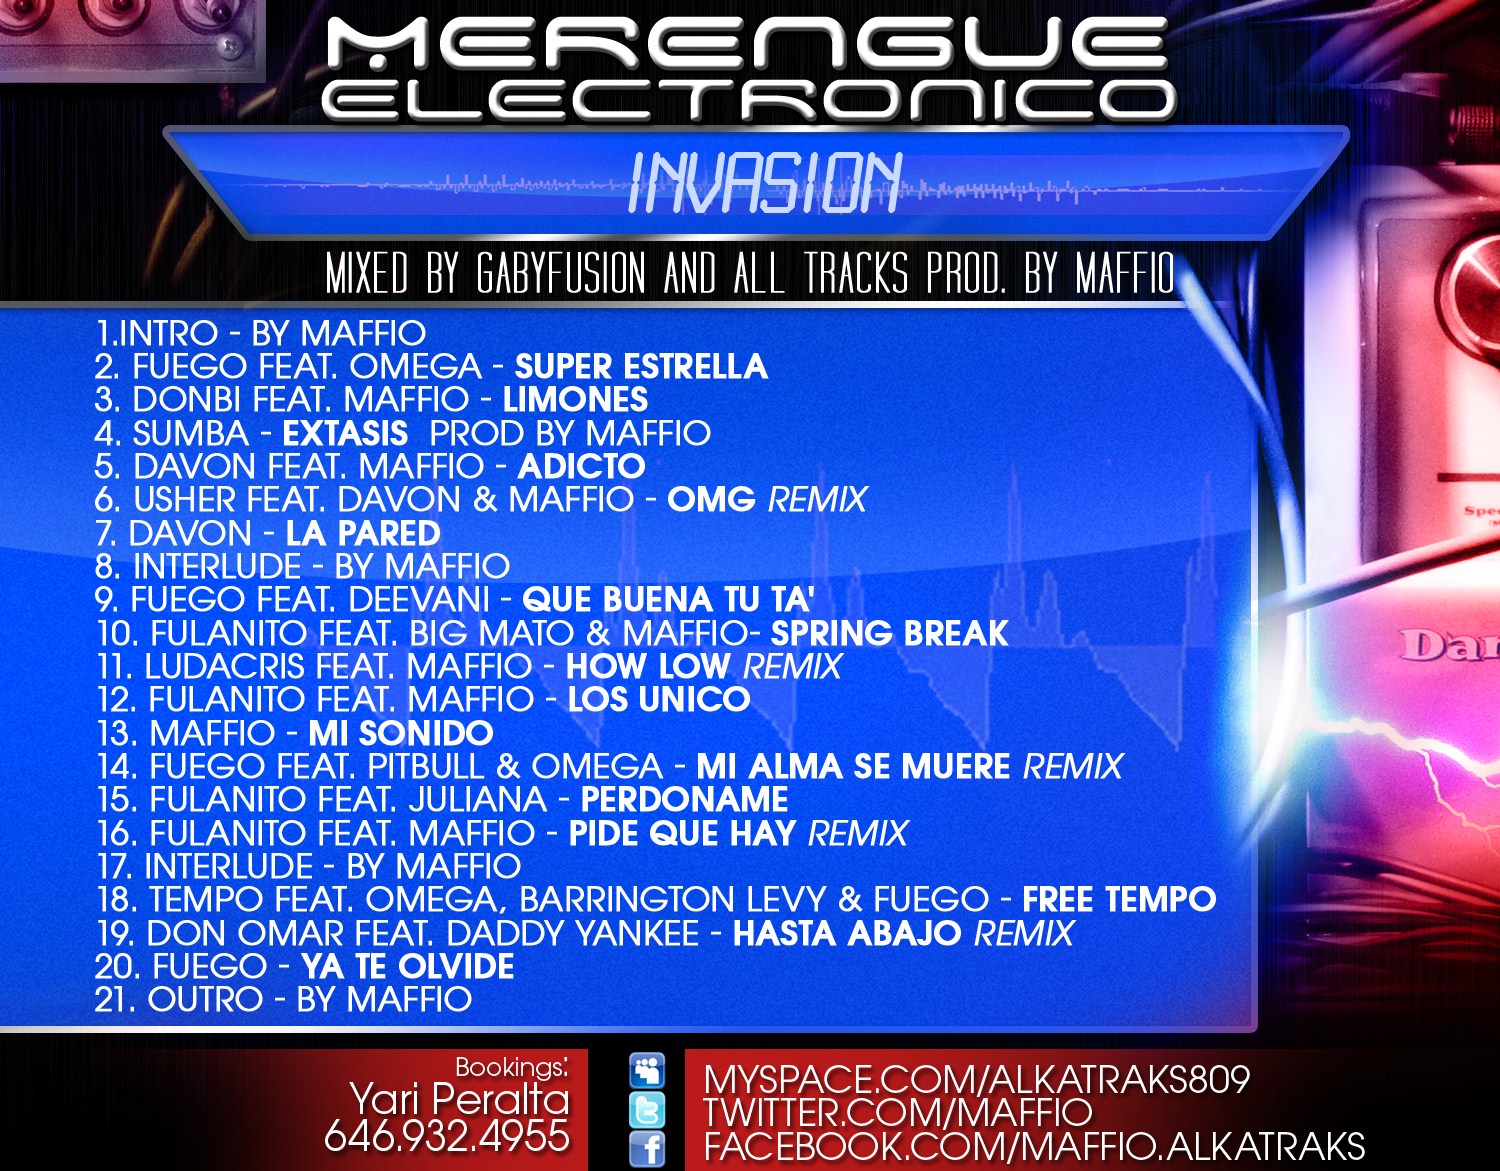 Merengue Electronico Invasion. The MixTape Merengue+Electronico+Invasion+Tracklist+CROPPED